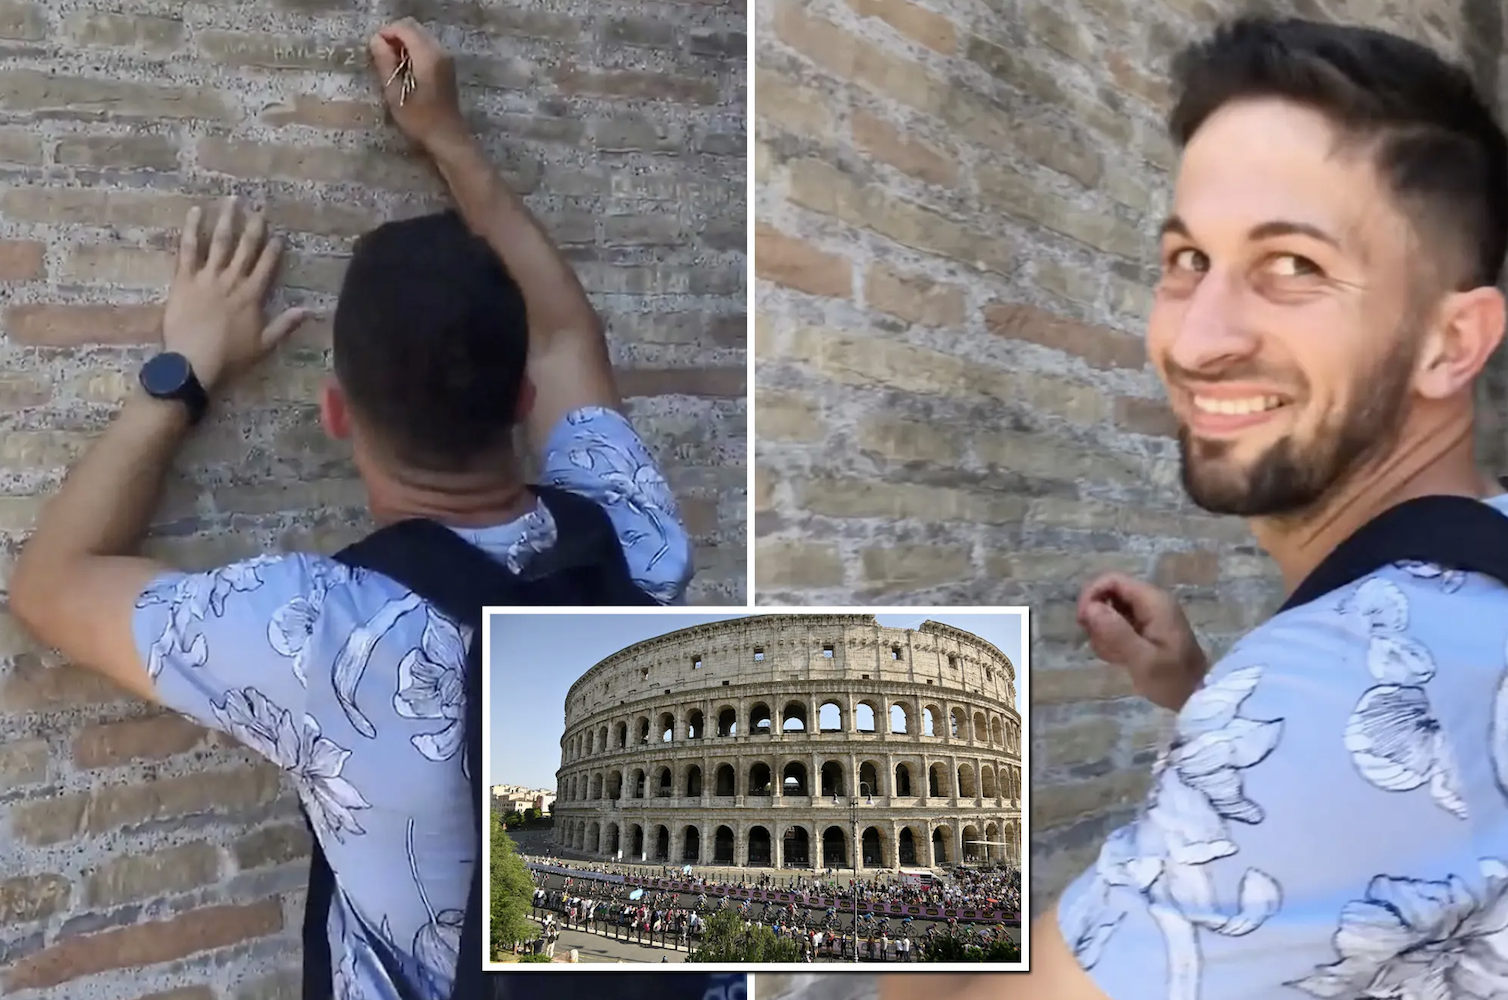 Multiple tourists deface the Roman Colosseum. 